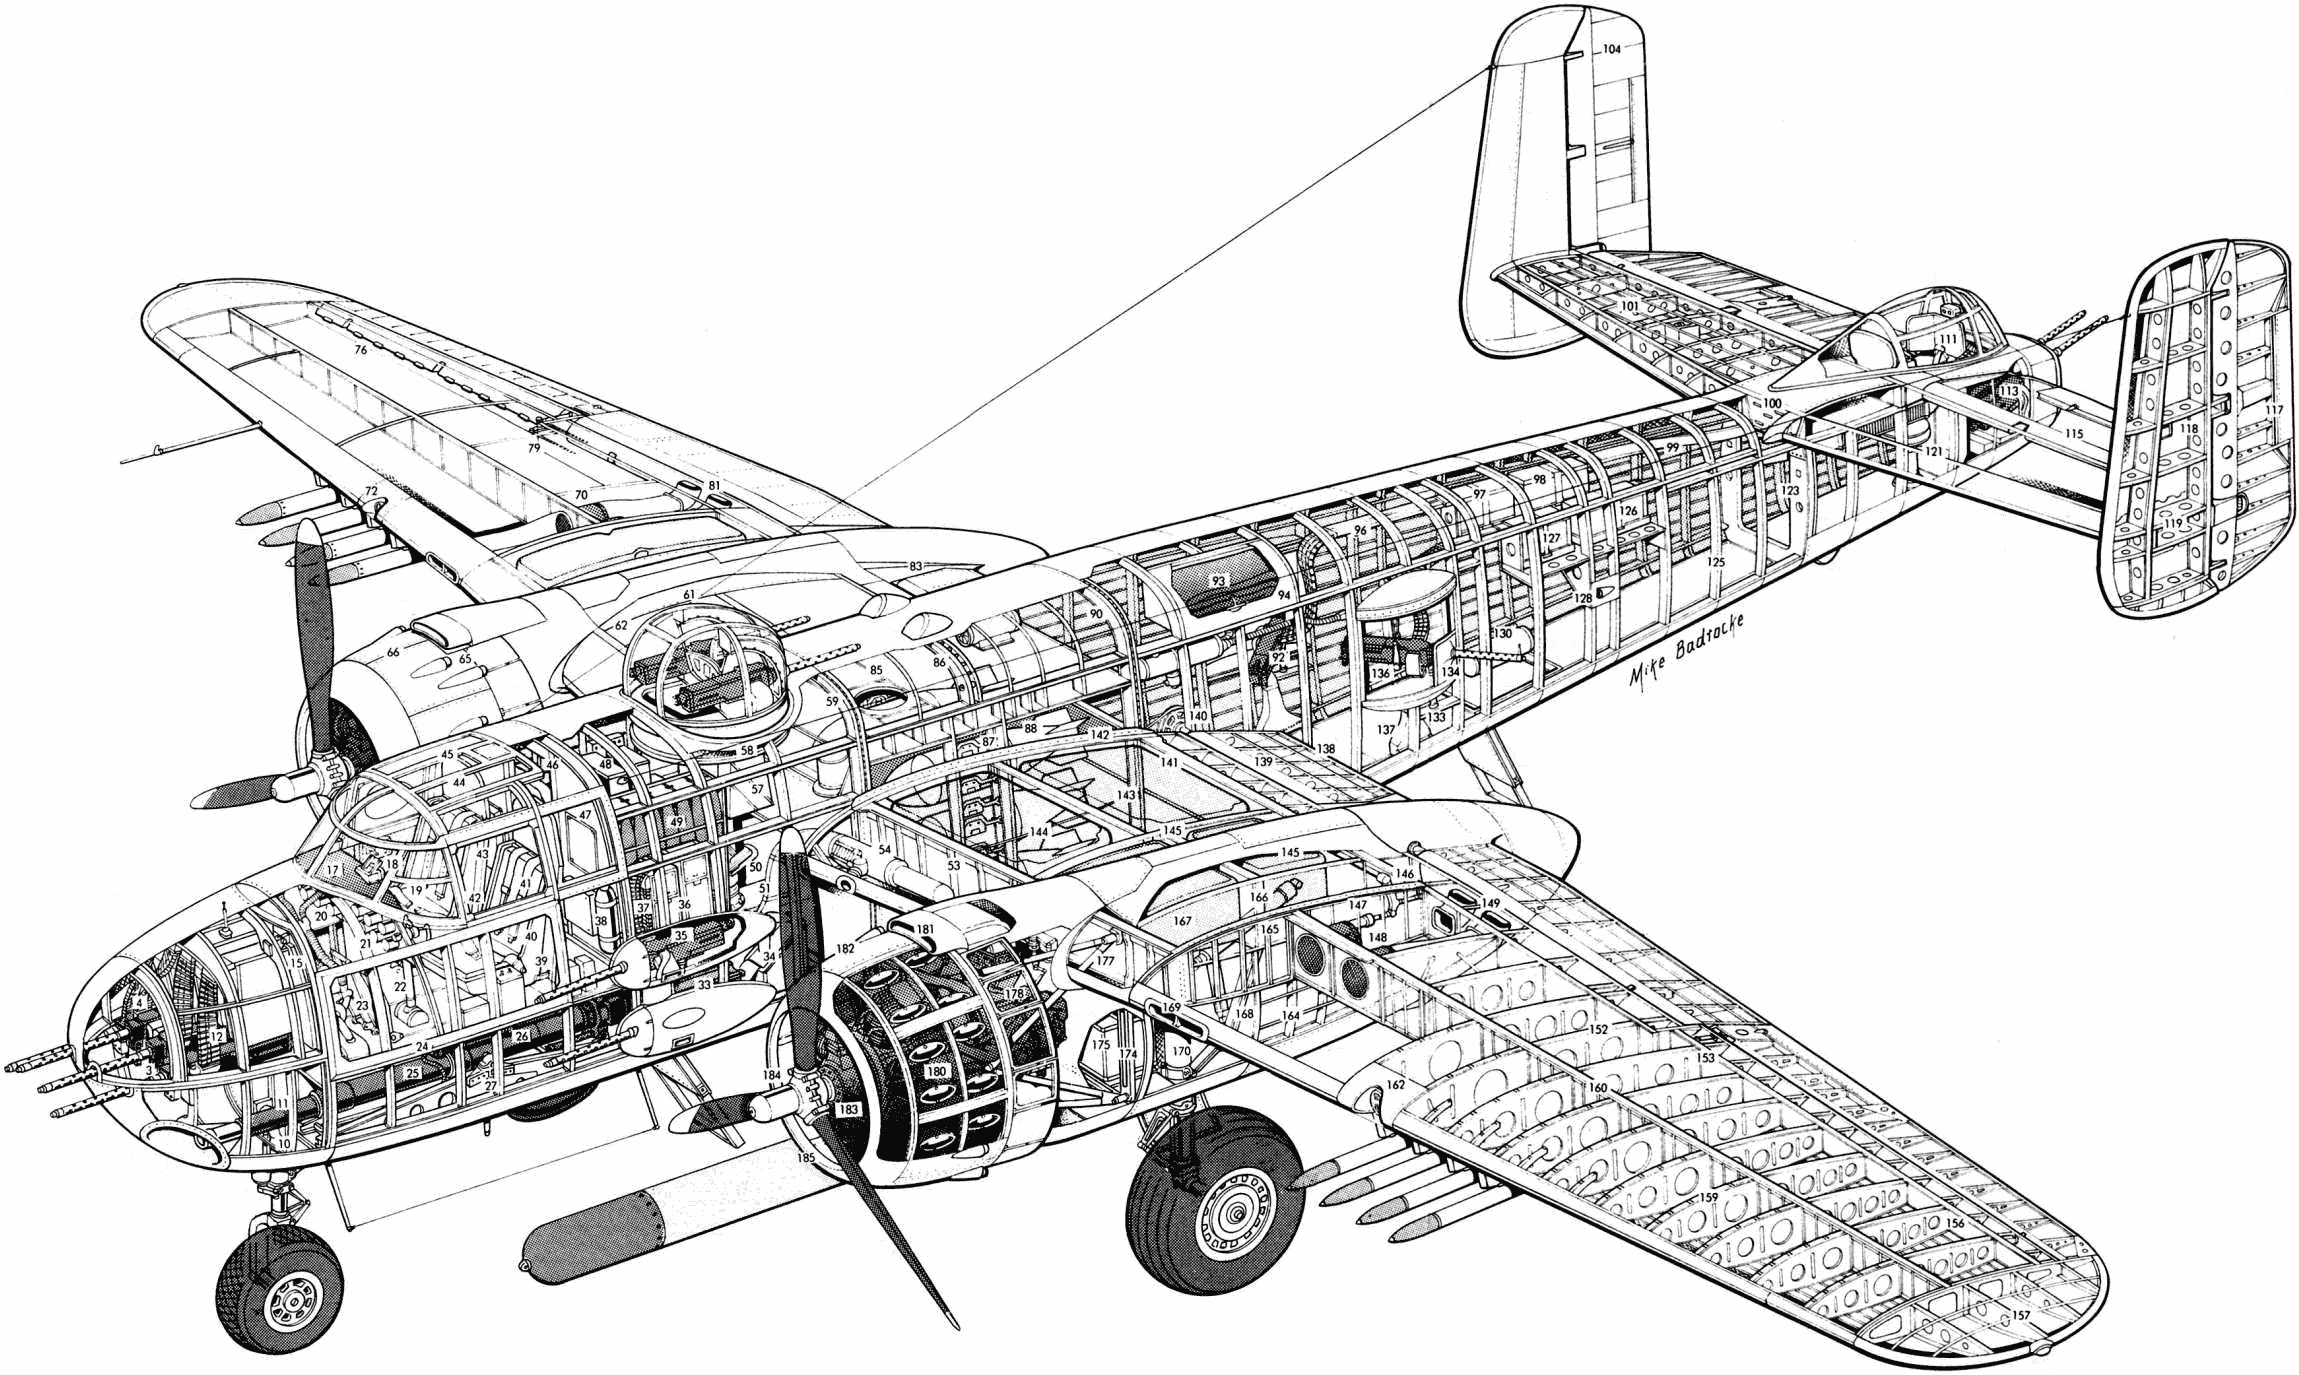 North American B-25 Mitchell cutaway